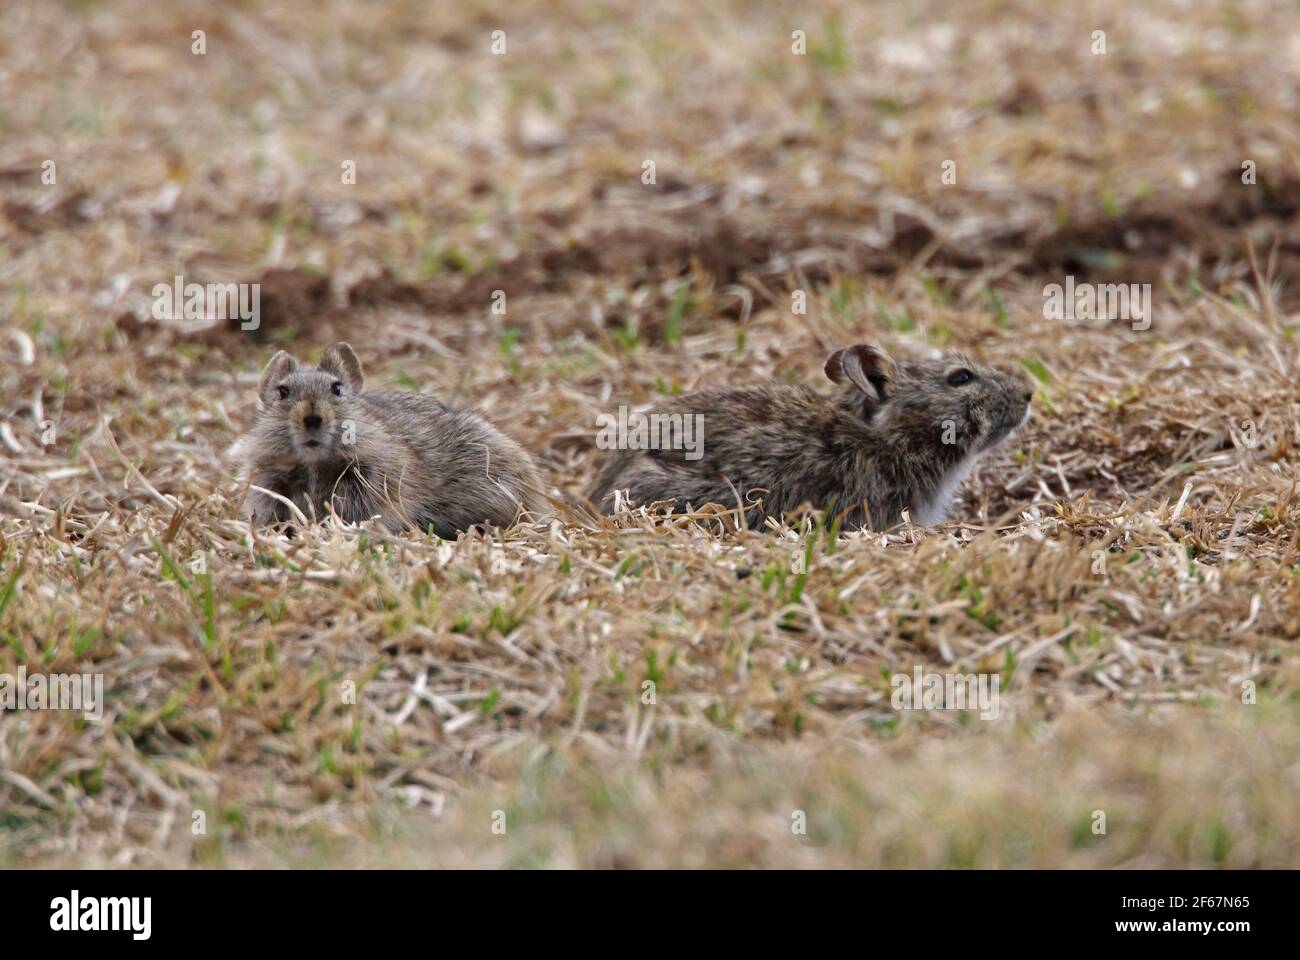 Abessinian Grass Rat (Arvicanthis abyssinicus) zwei Erwachsene auf spärlichen Grasland Bale Mountains NP, Äthiopien April Stockfoto